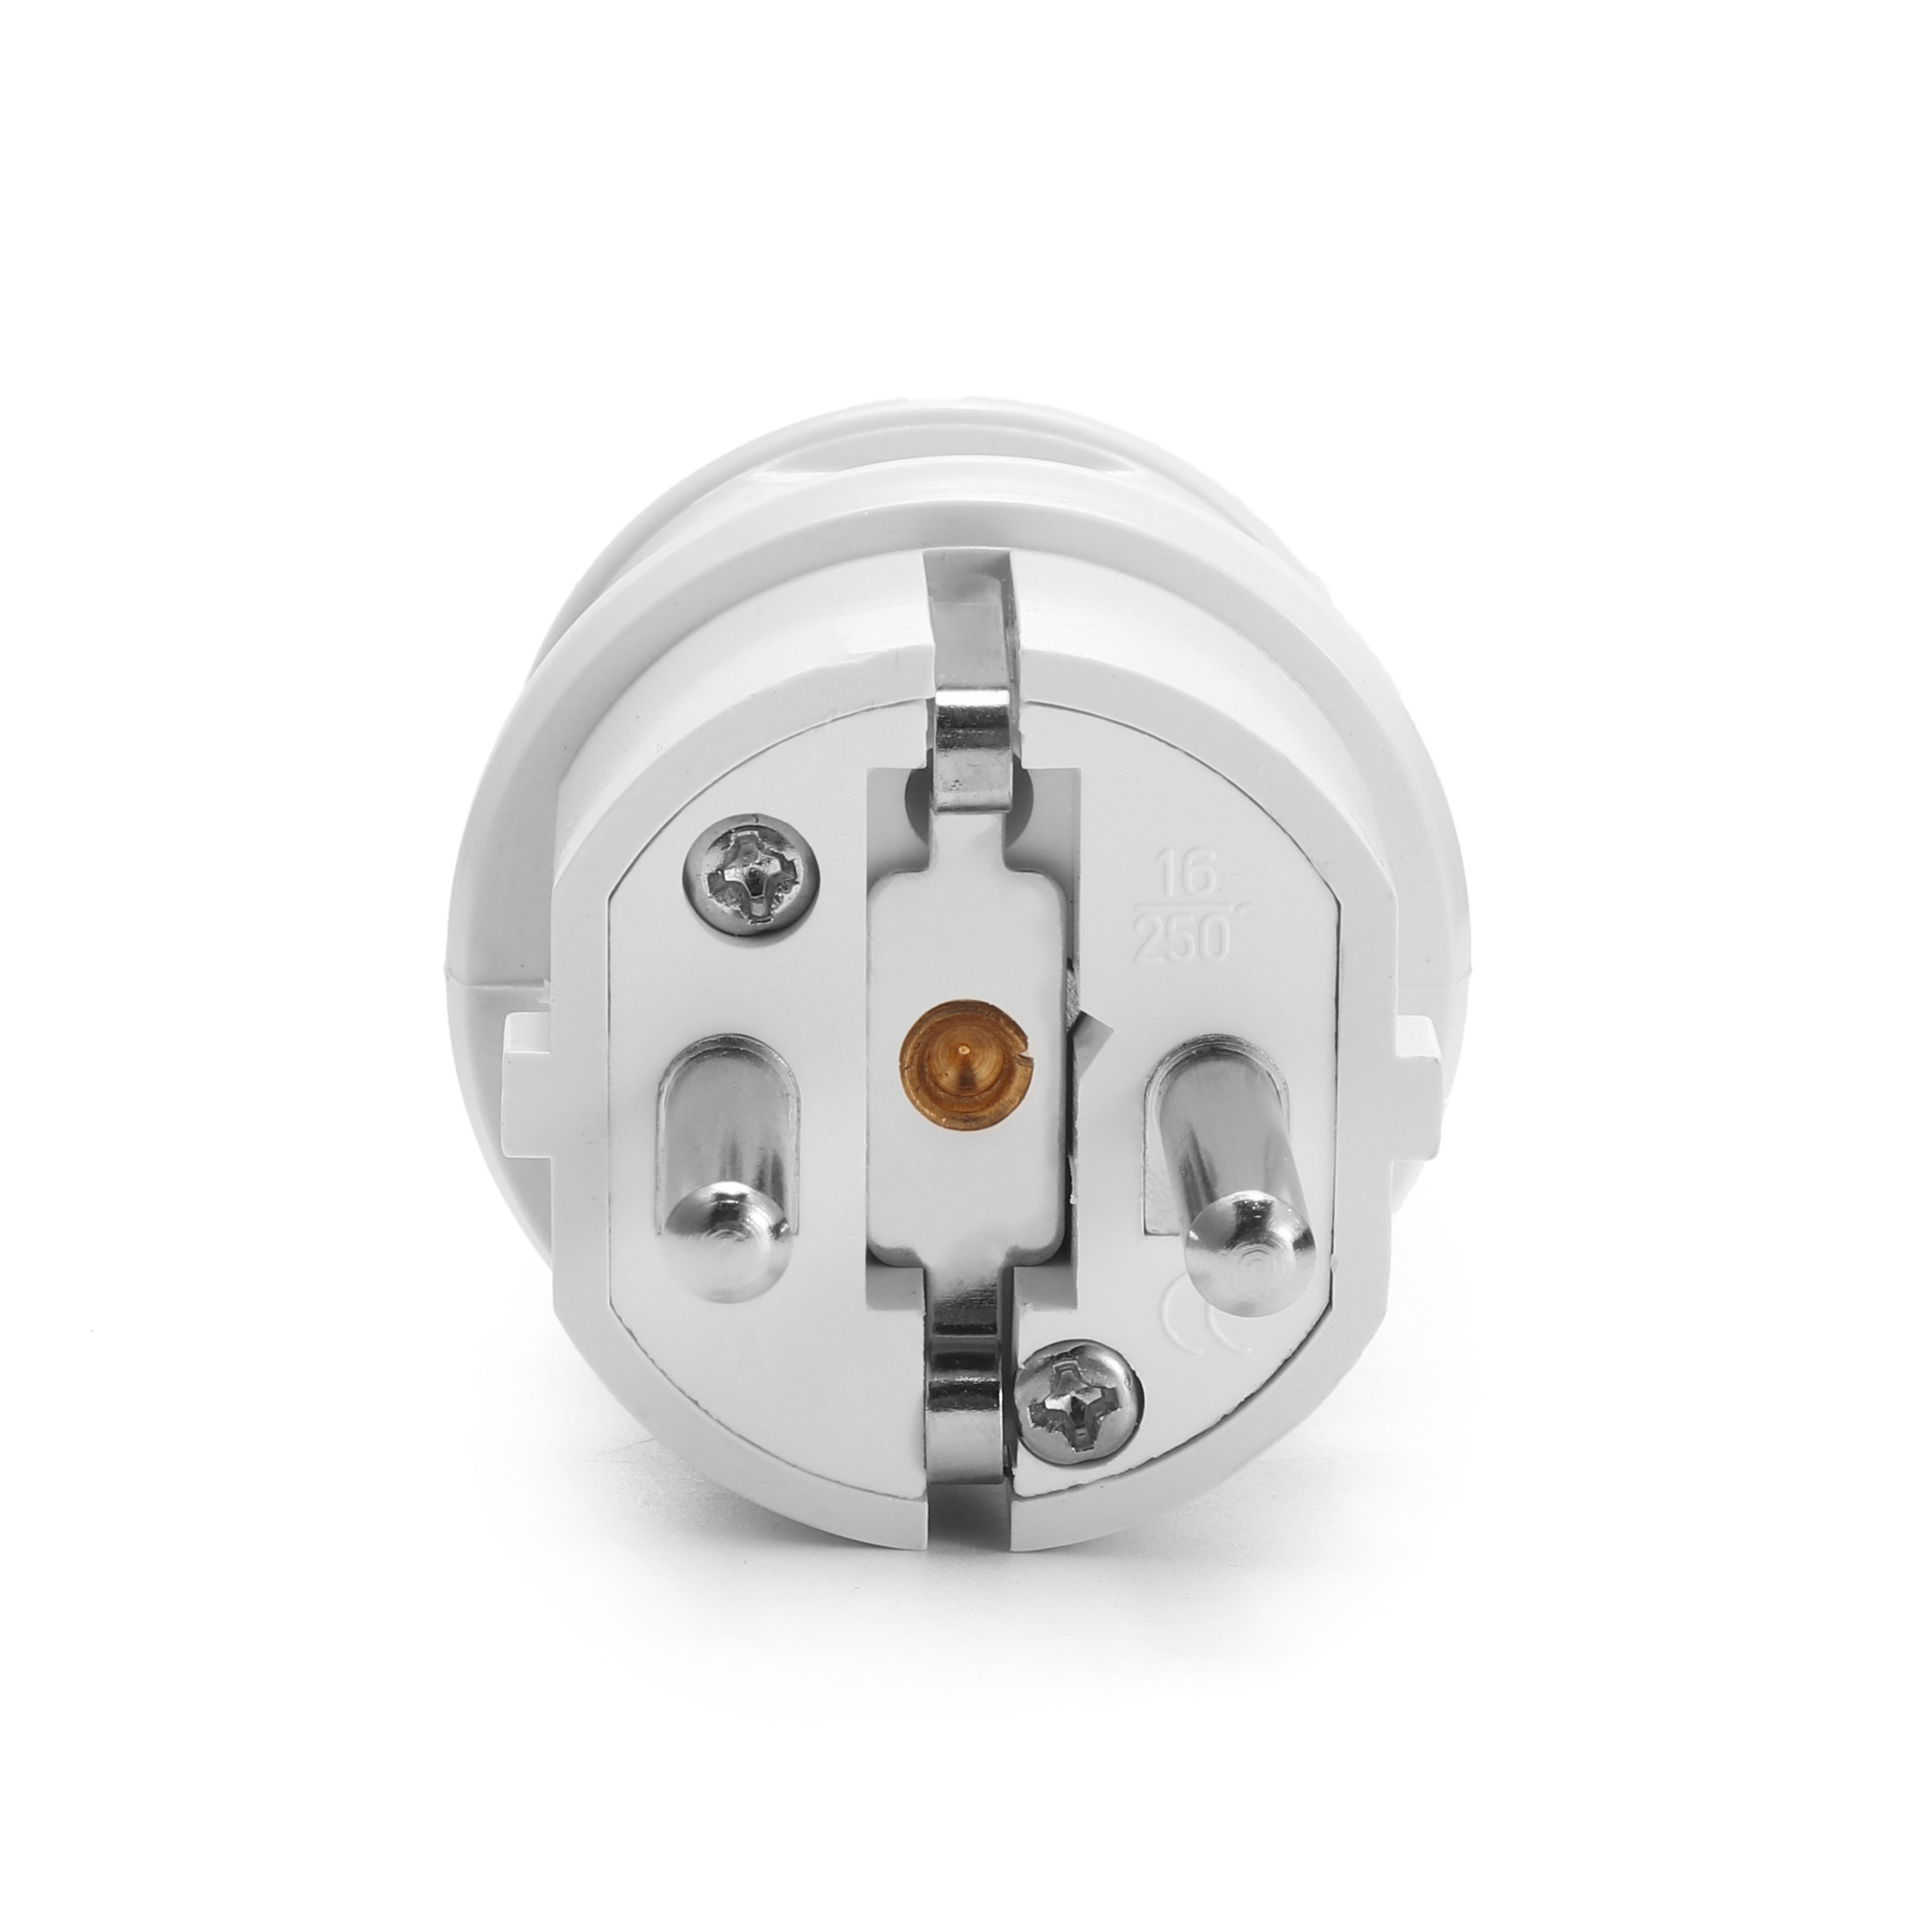 Loskii-HA-18-EU-Wire-Plug-Residential-Round-Pins-Plug-16-Amp-250-Volt-Two-Pins-Plug-for-DIY-1253810